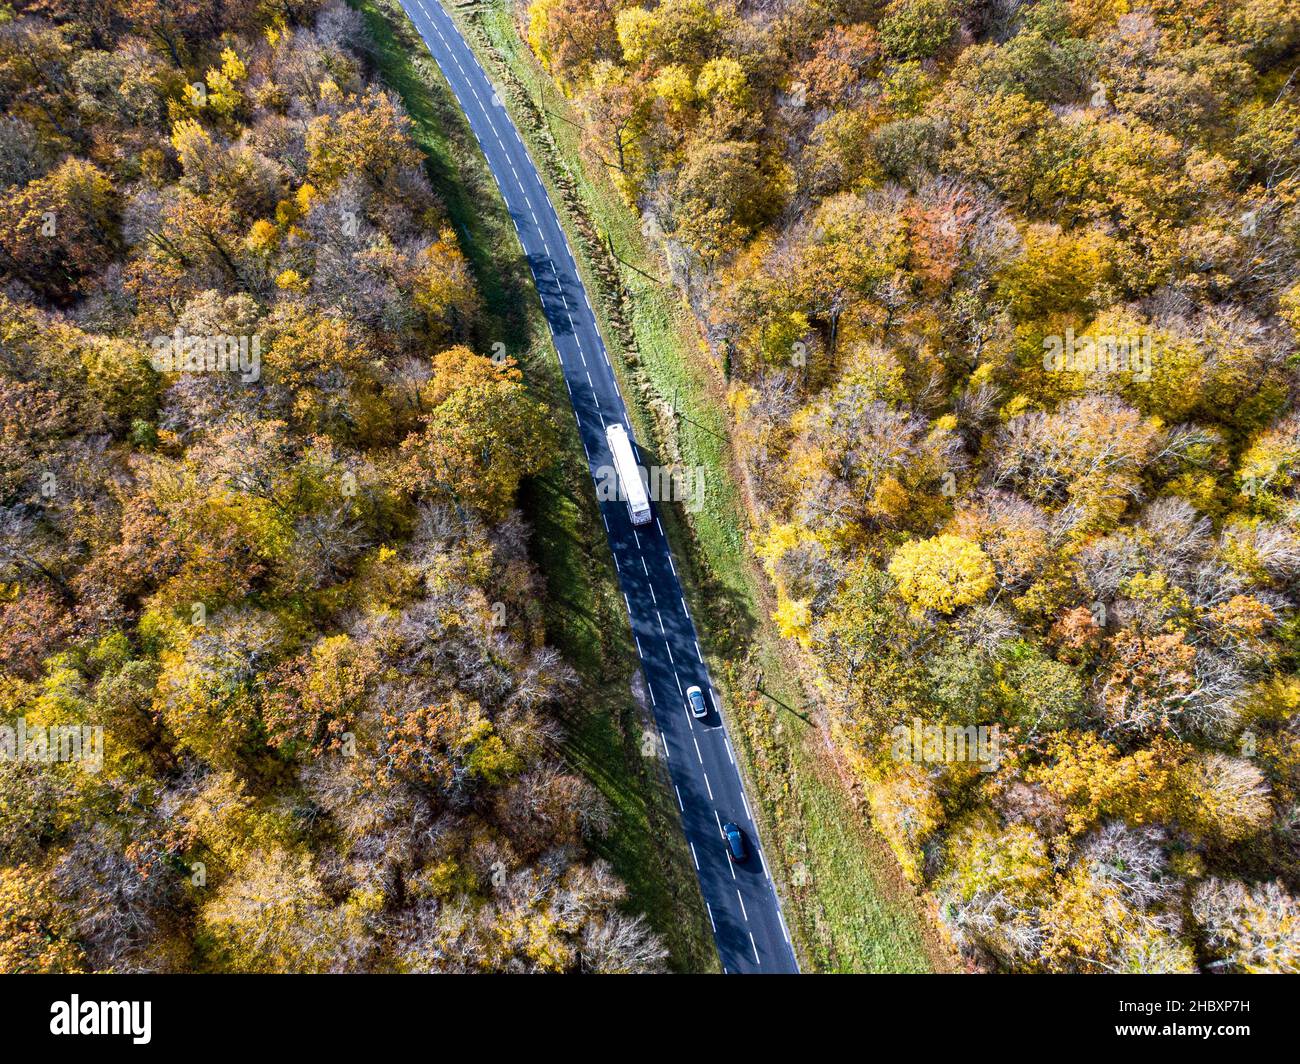 Strada forestale con camion bianco in autunno. Veduta aerea strada che attraversa una foresta di alberi decidui gialli e dorati, autunno Foto Stock